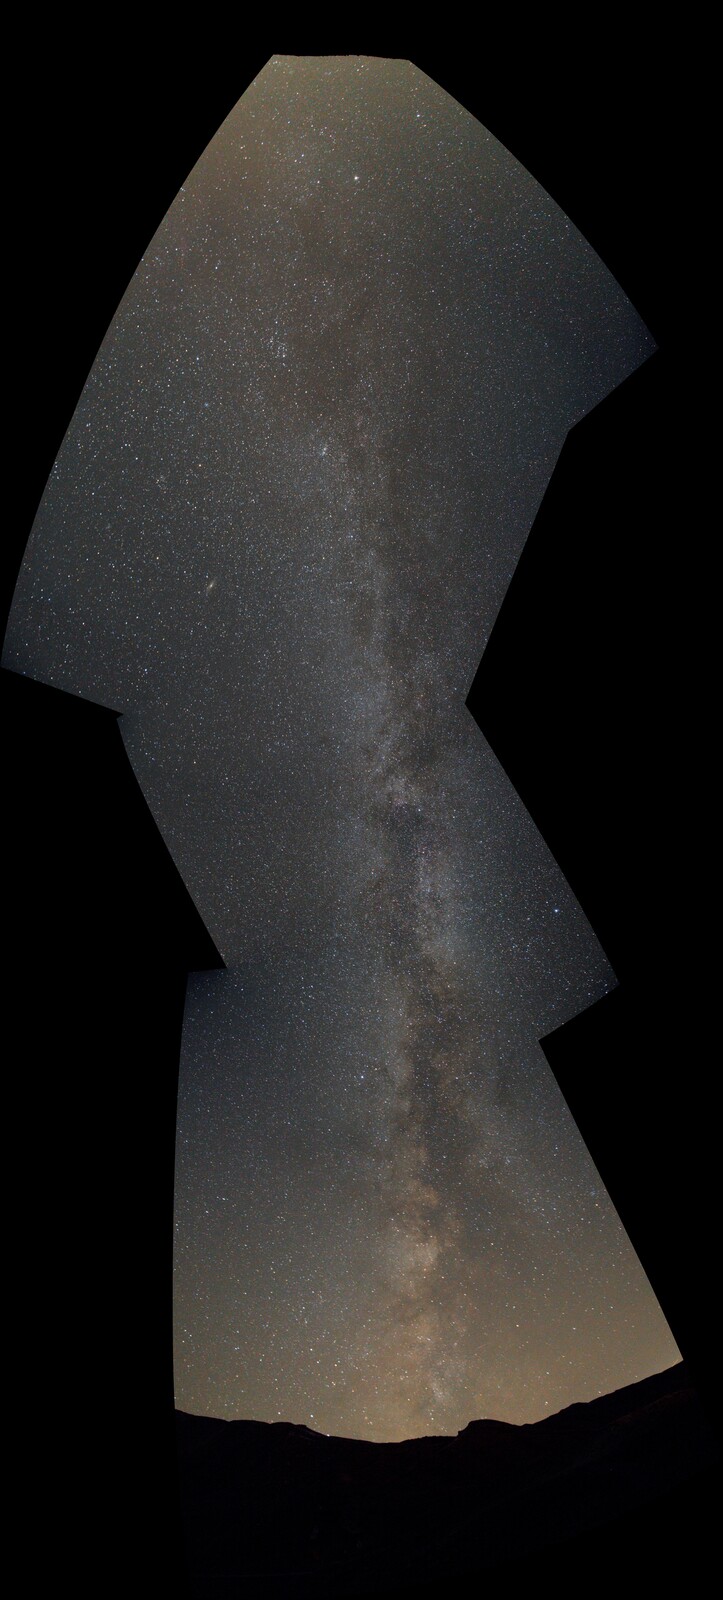 2021 10 05 Milky Way 3 small